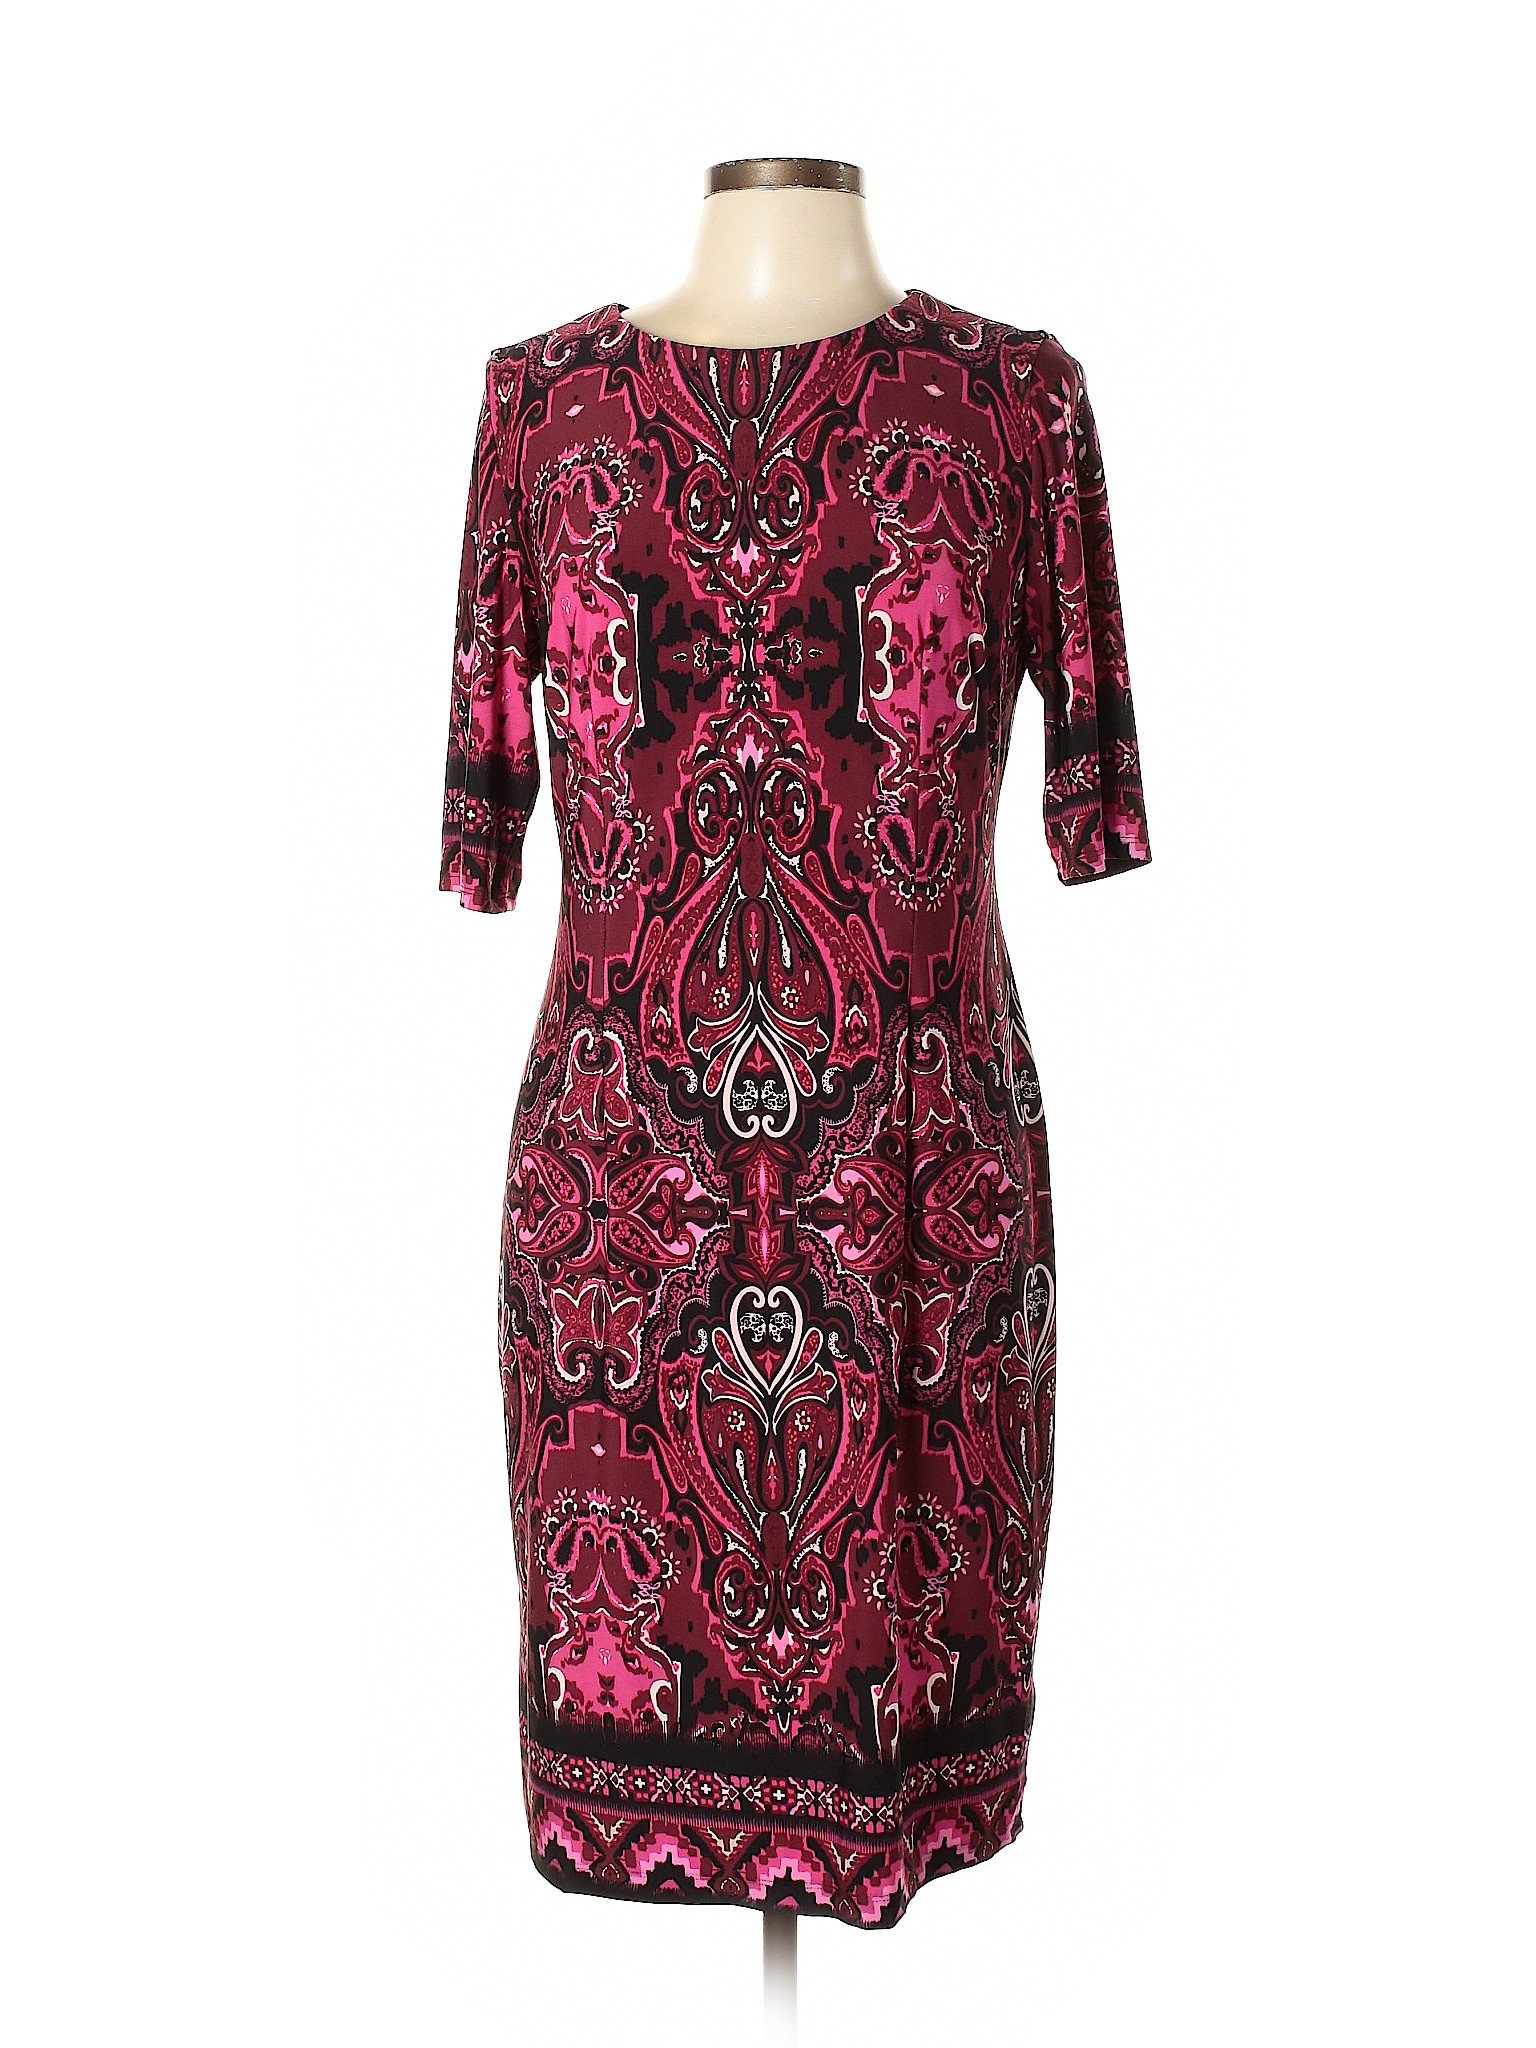 R&K Women Red Casual Dress 10 | eBay